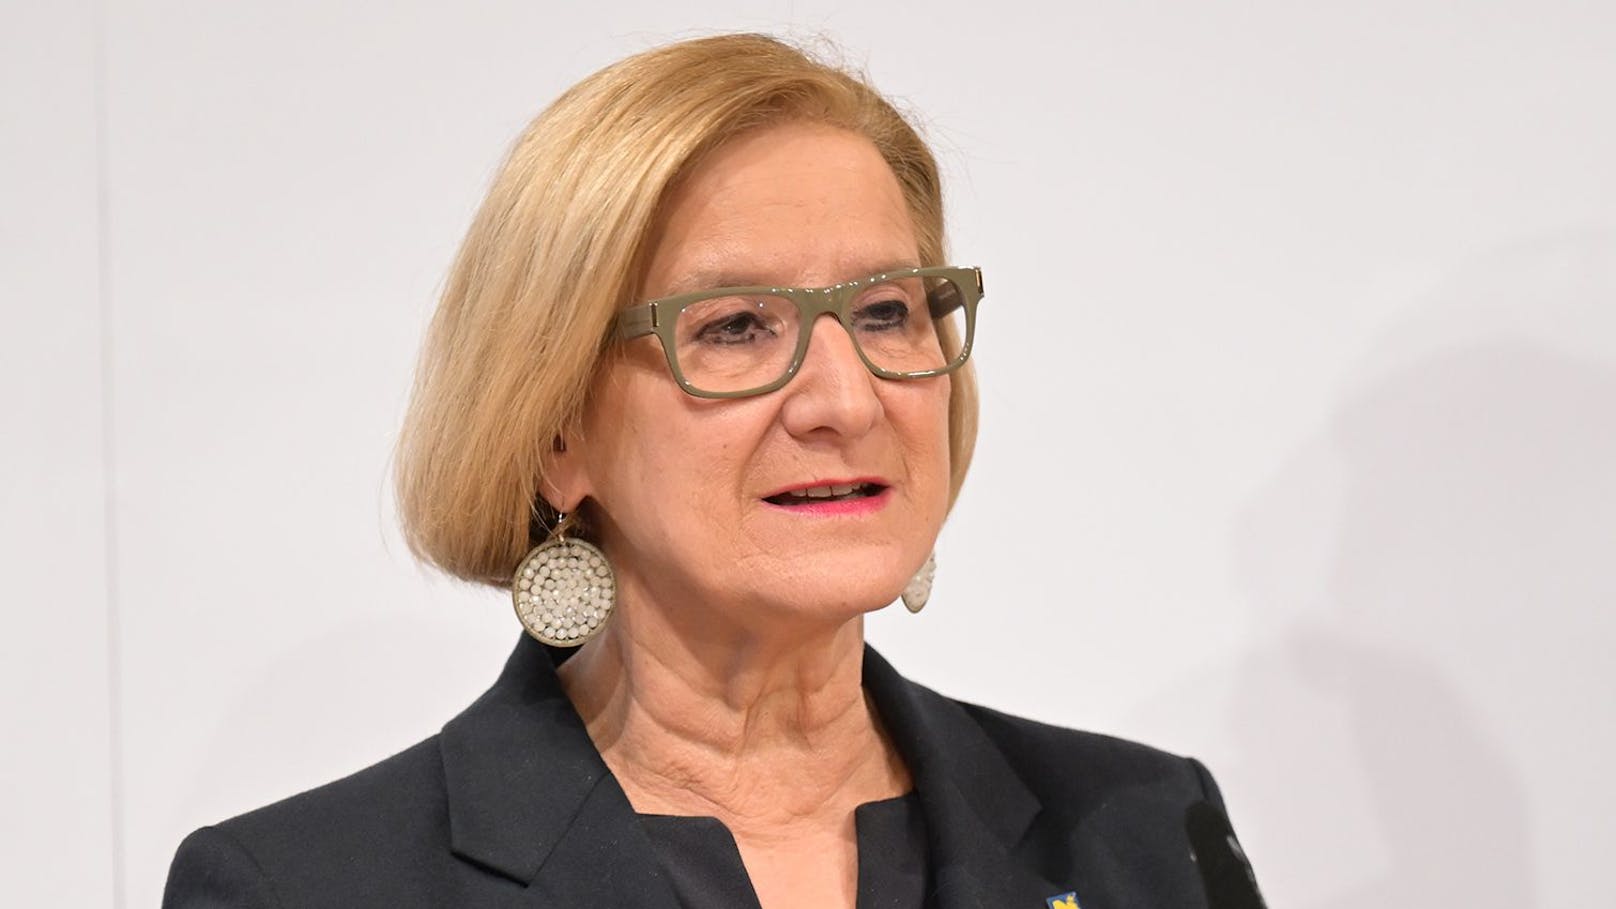 Johanna Mikl-Leitner (ÖVP) ist Landeshauptfrau und zuständig für Wirtschaft, Tourismus, Kultur und Personalangelegenheiten, europäische Integration, EU-Erweiterung und die Außenbeziehungen des Landes.